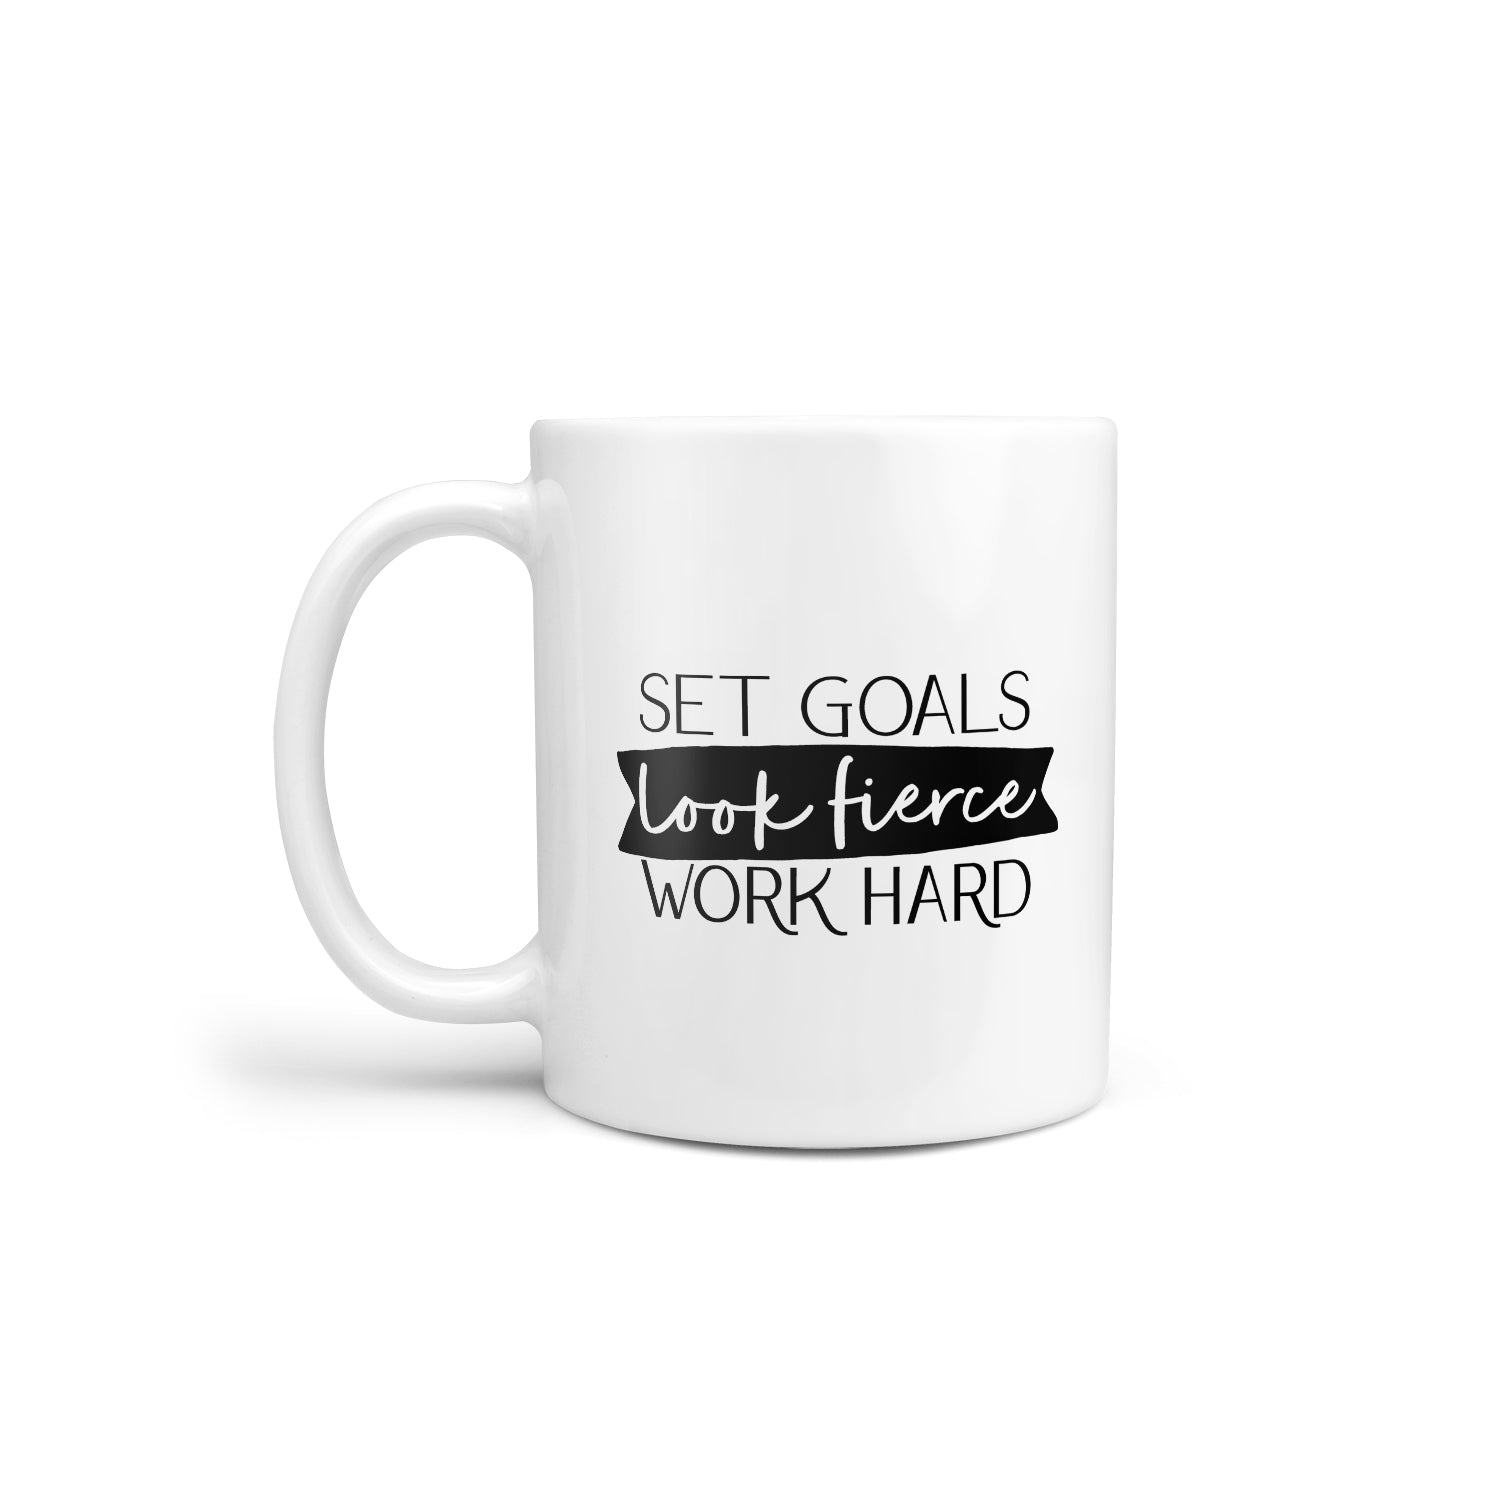 Work Hard Mug